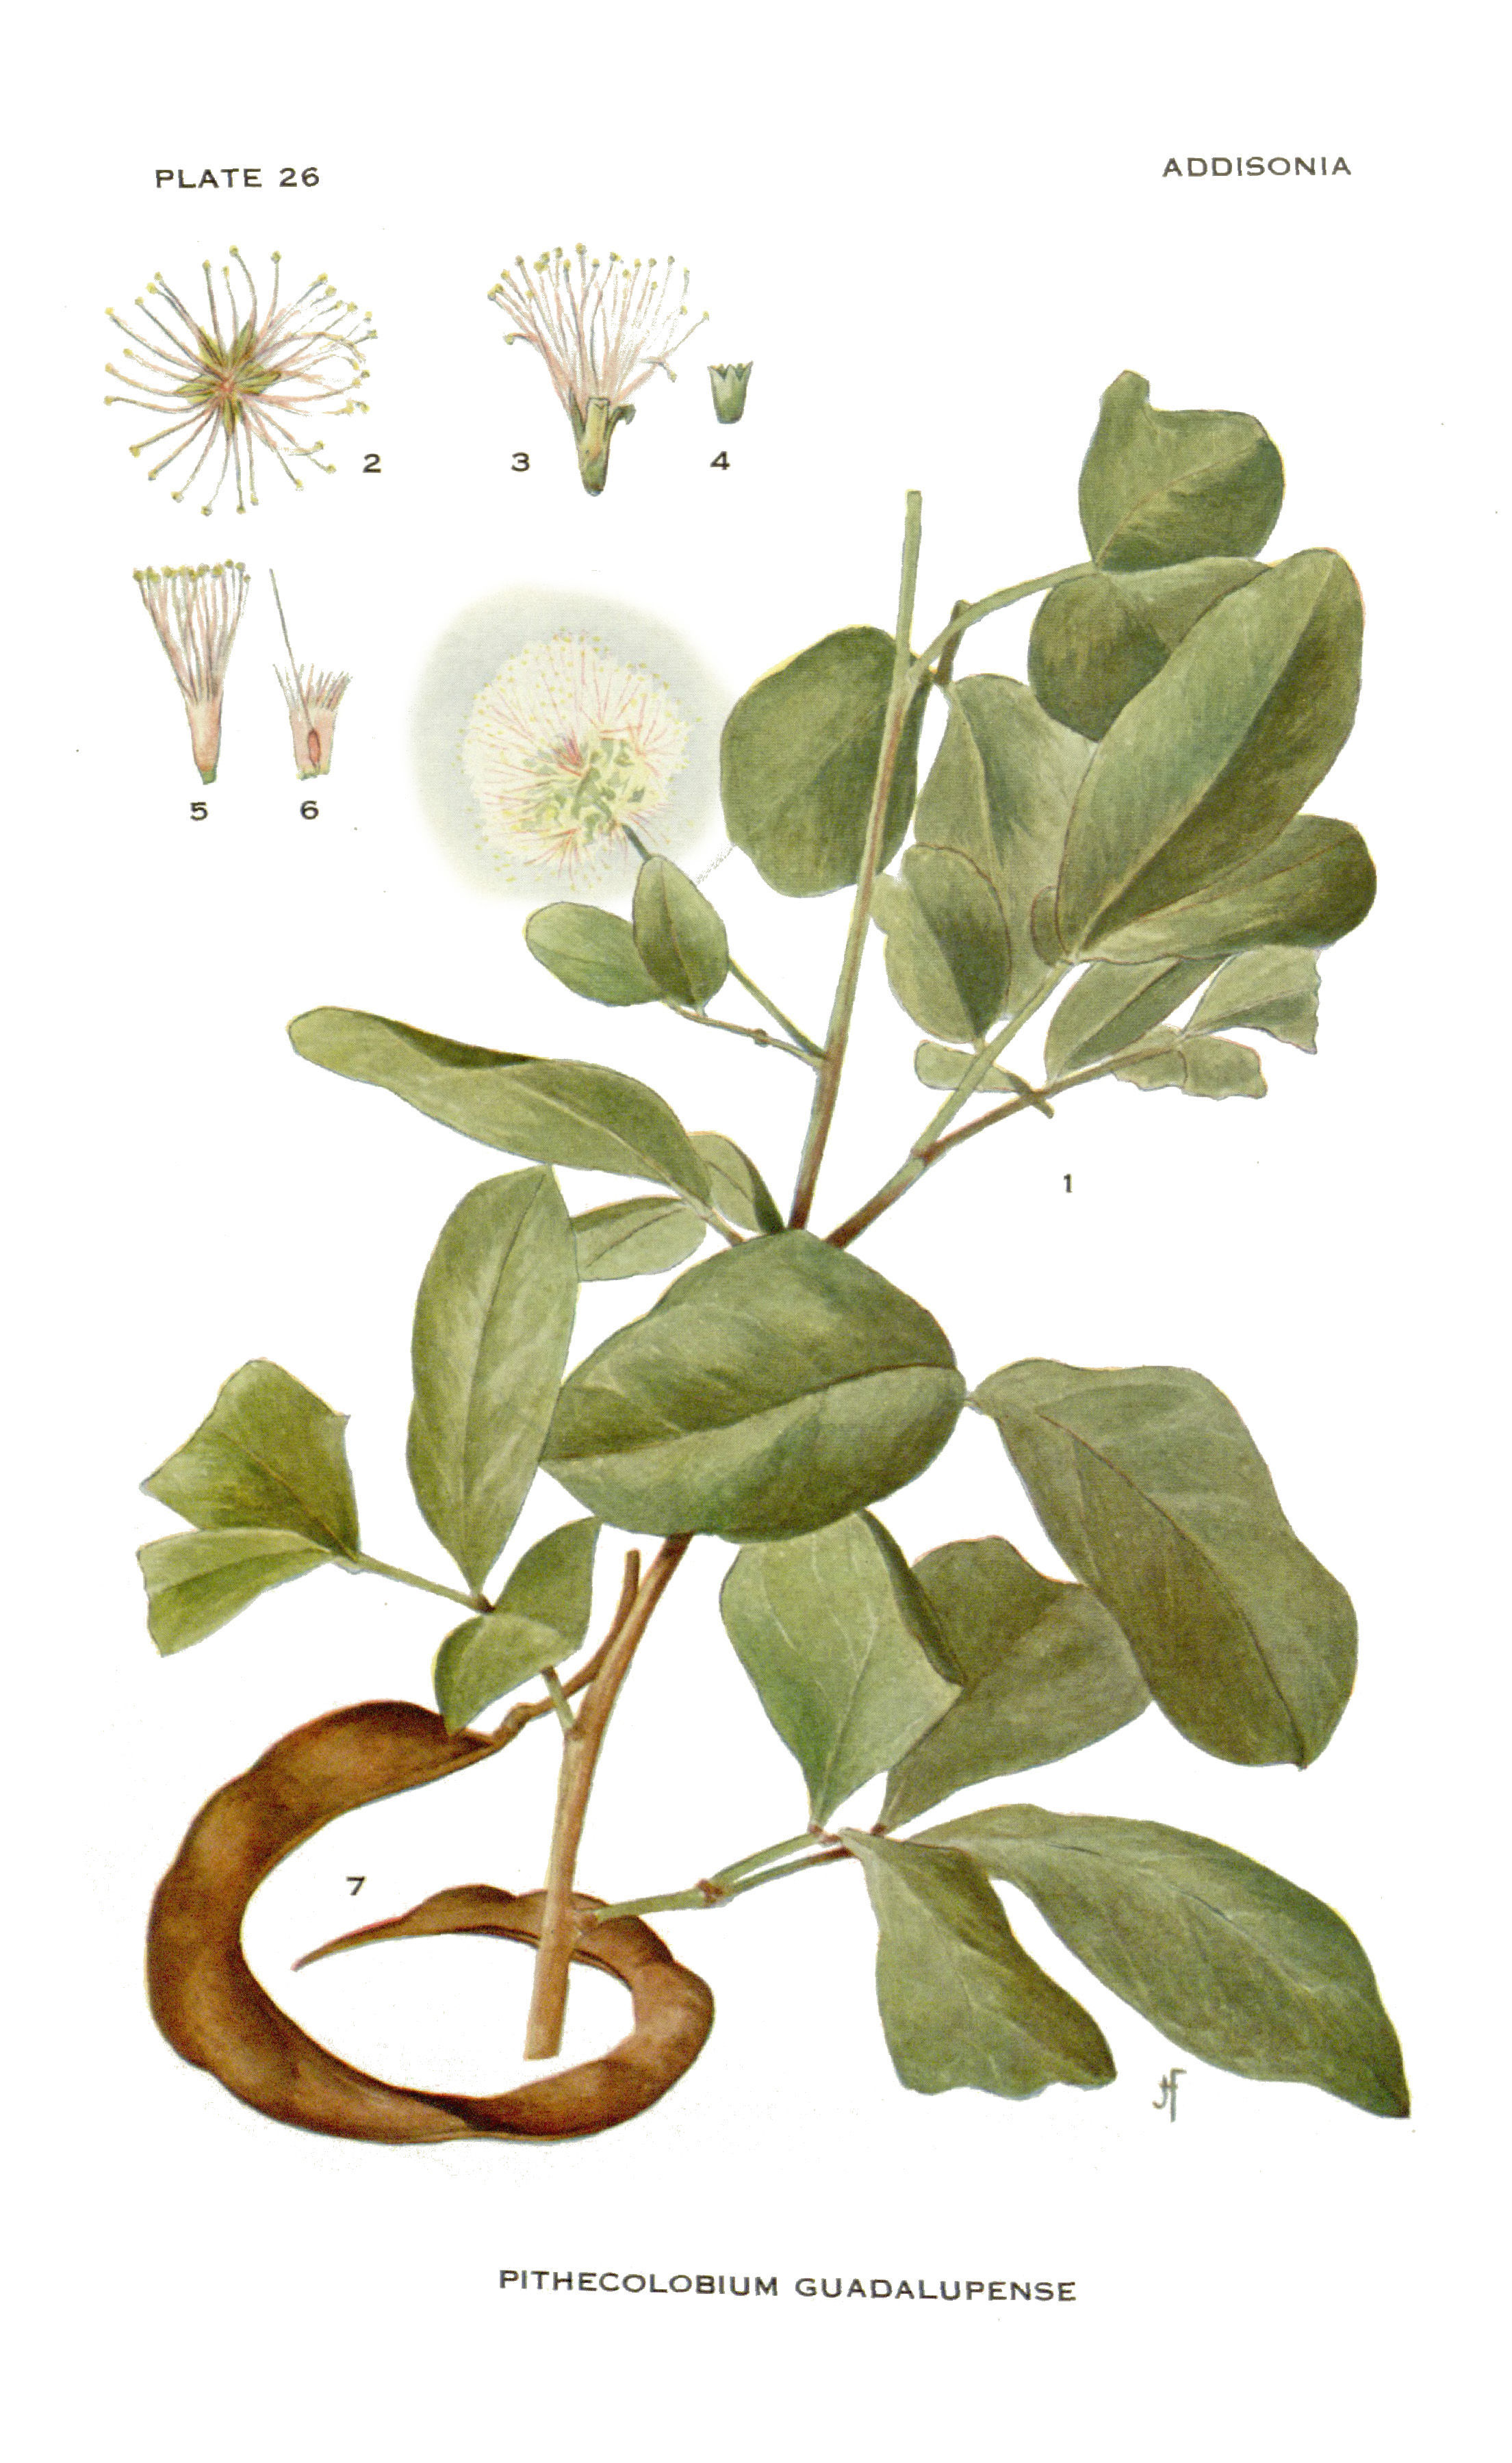 Image of Pithecolobium Guadolupense